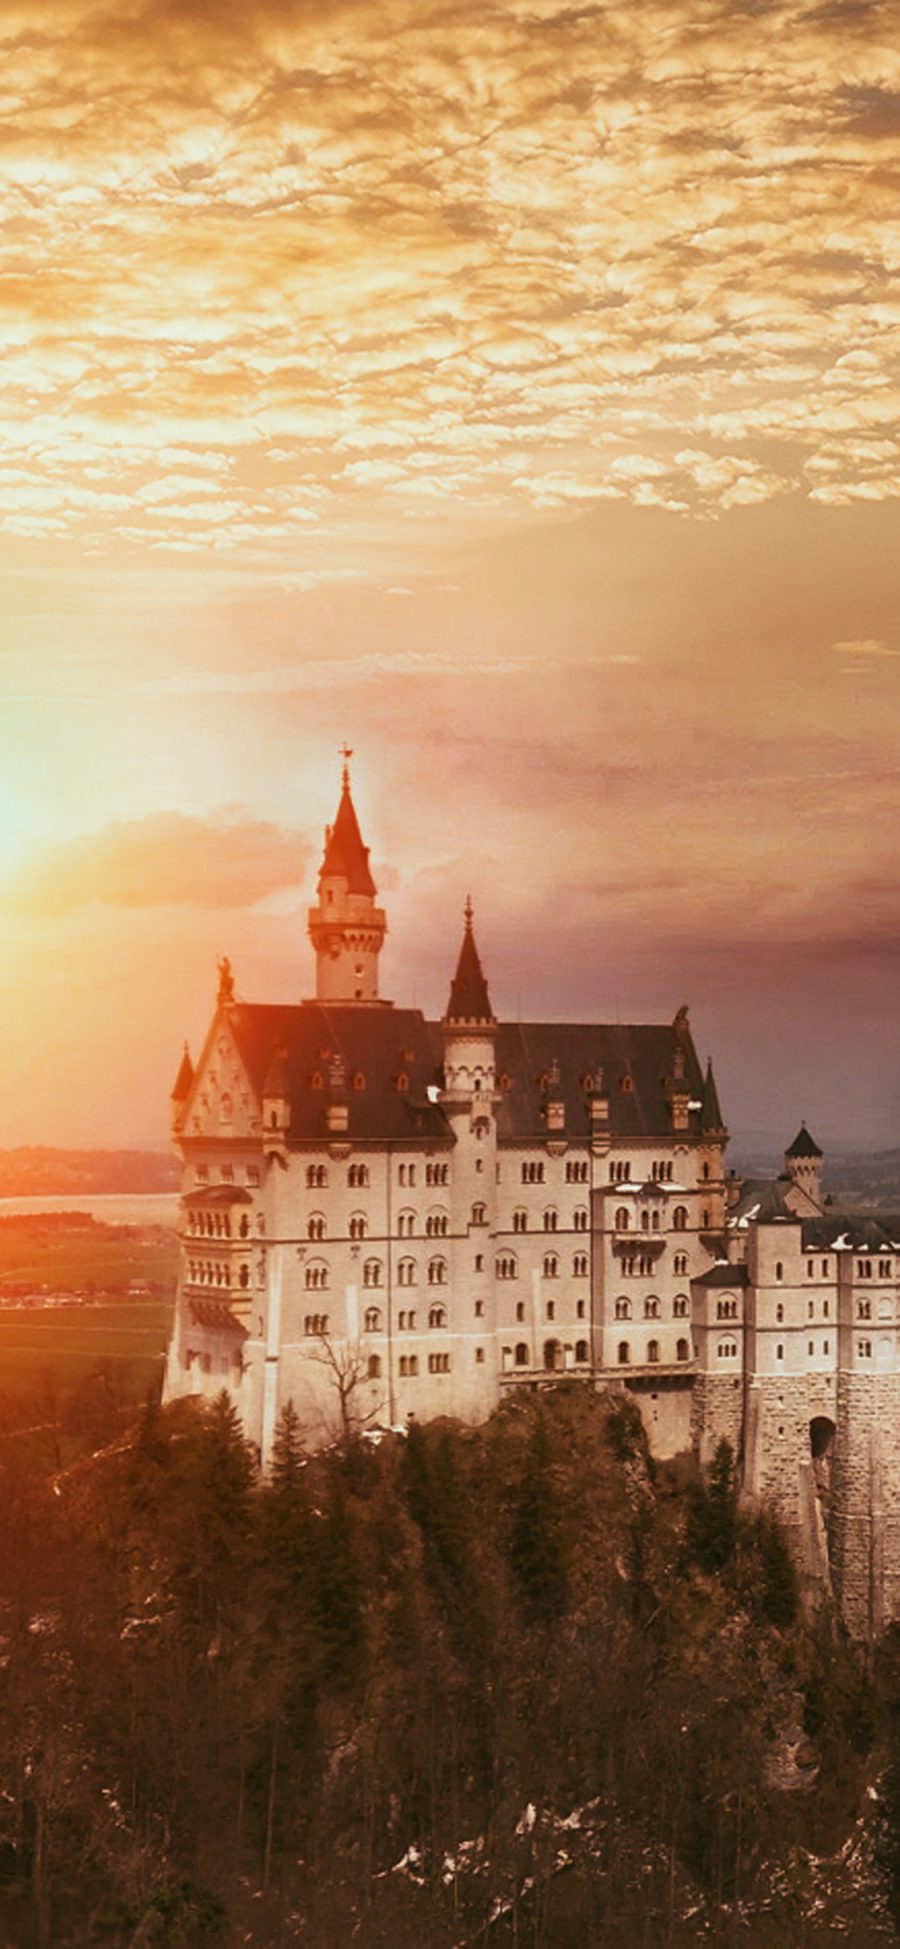 [2436×1125]风景 夕阳 天空 建筑 城堡 苹果手机壁纸图片